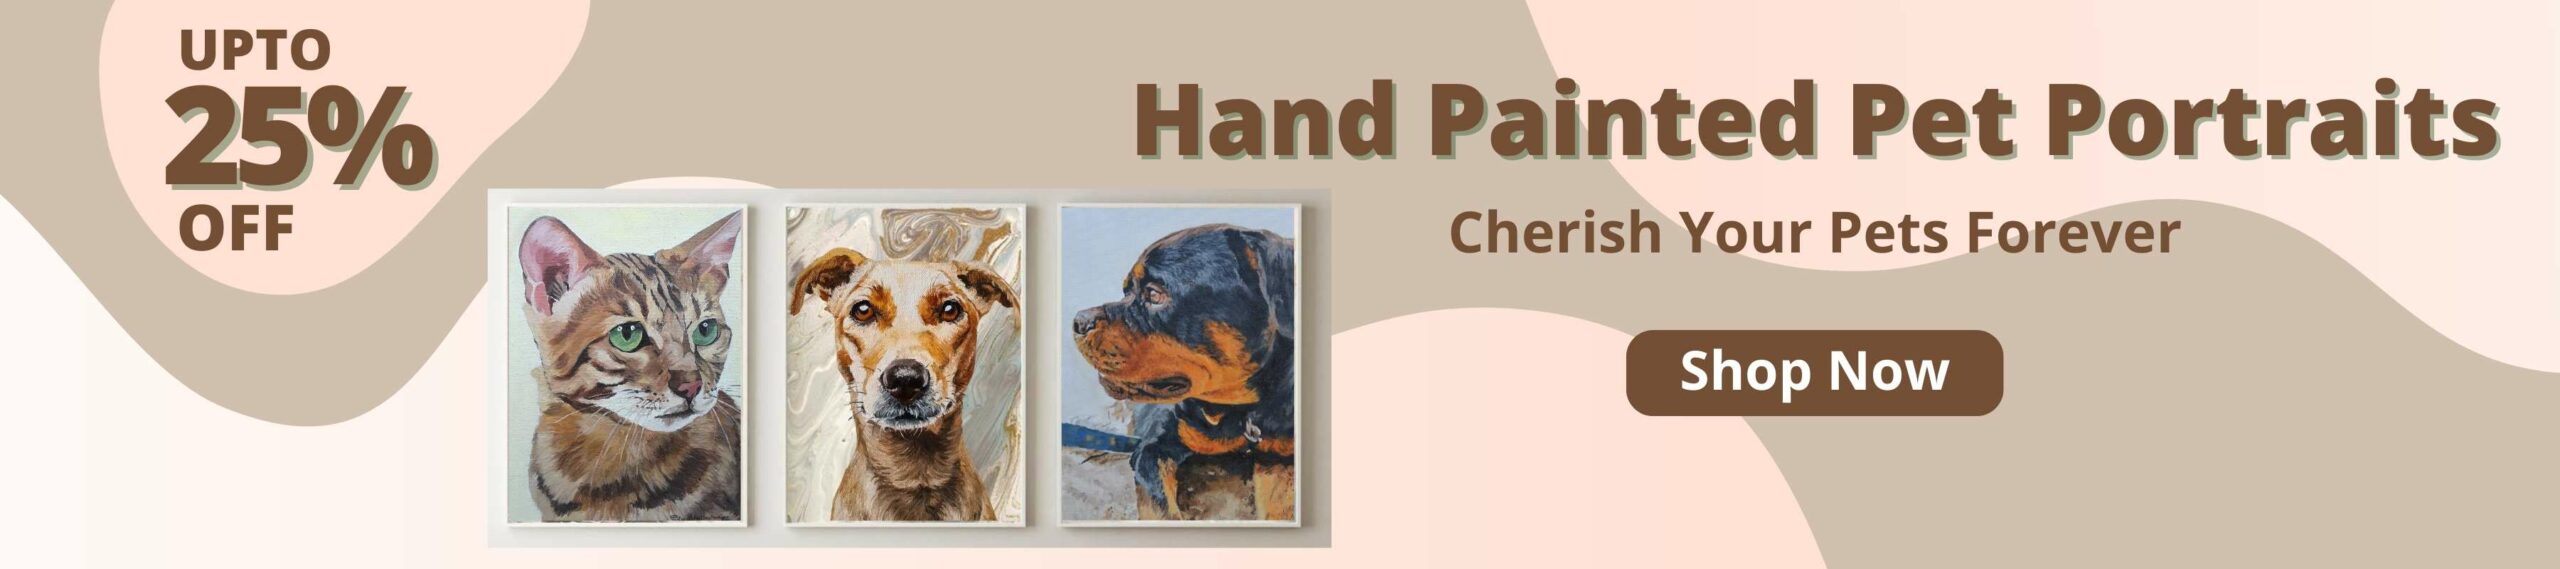 shop hand painted pet portraits